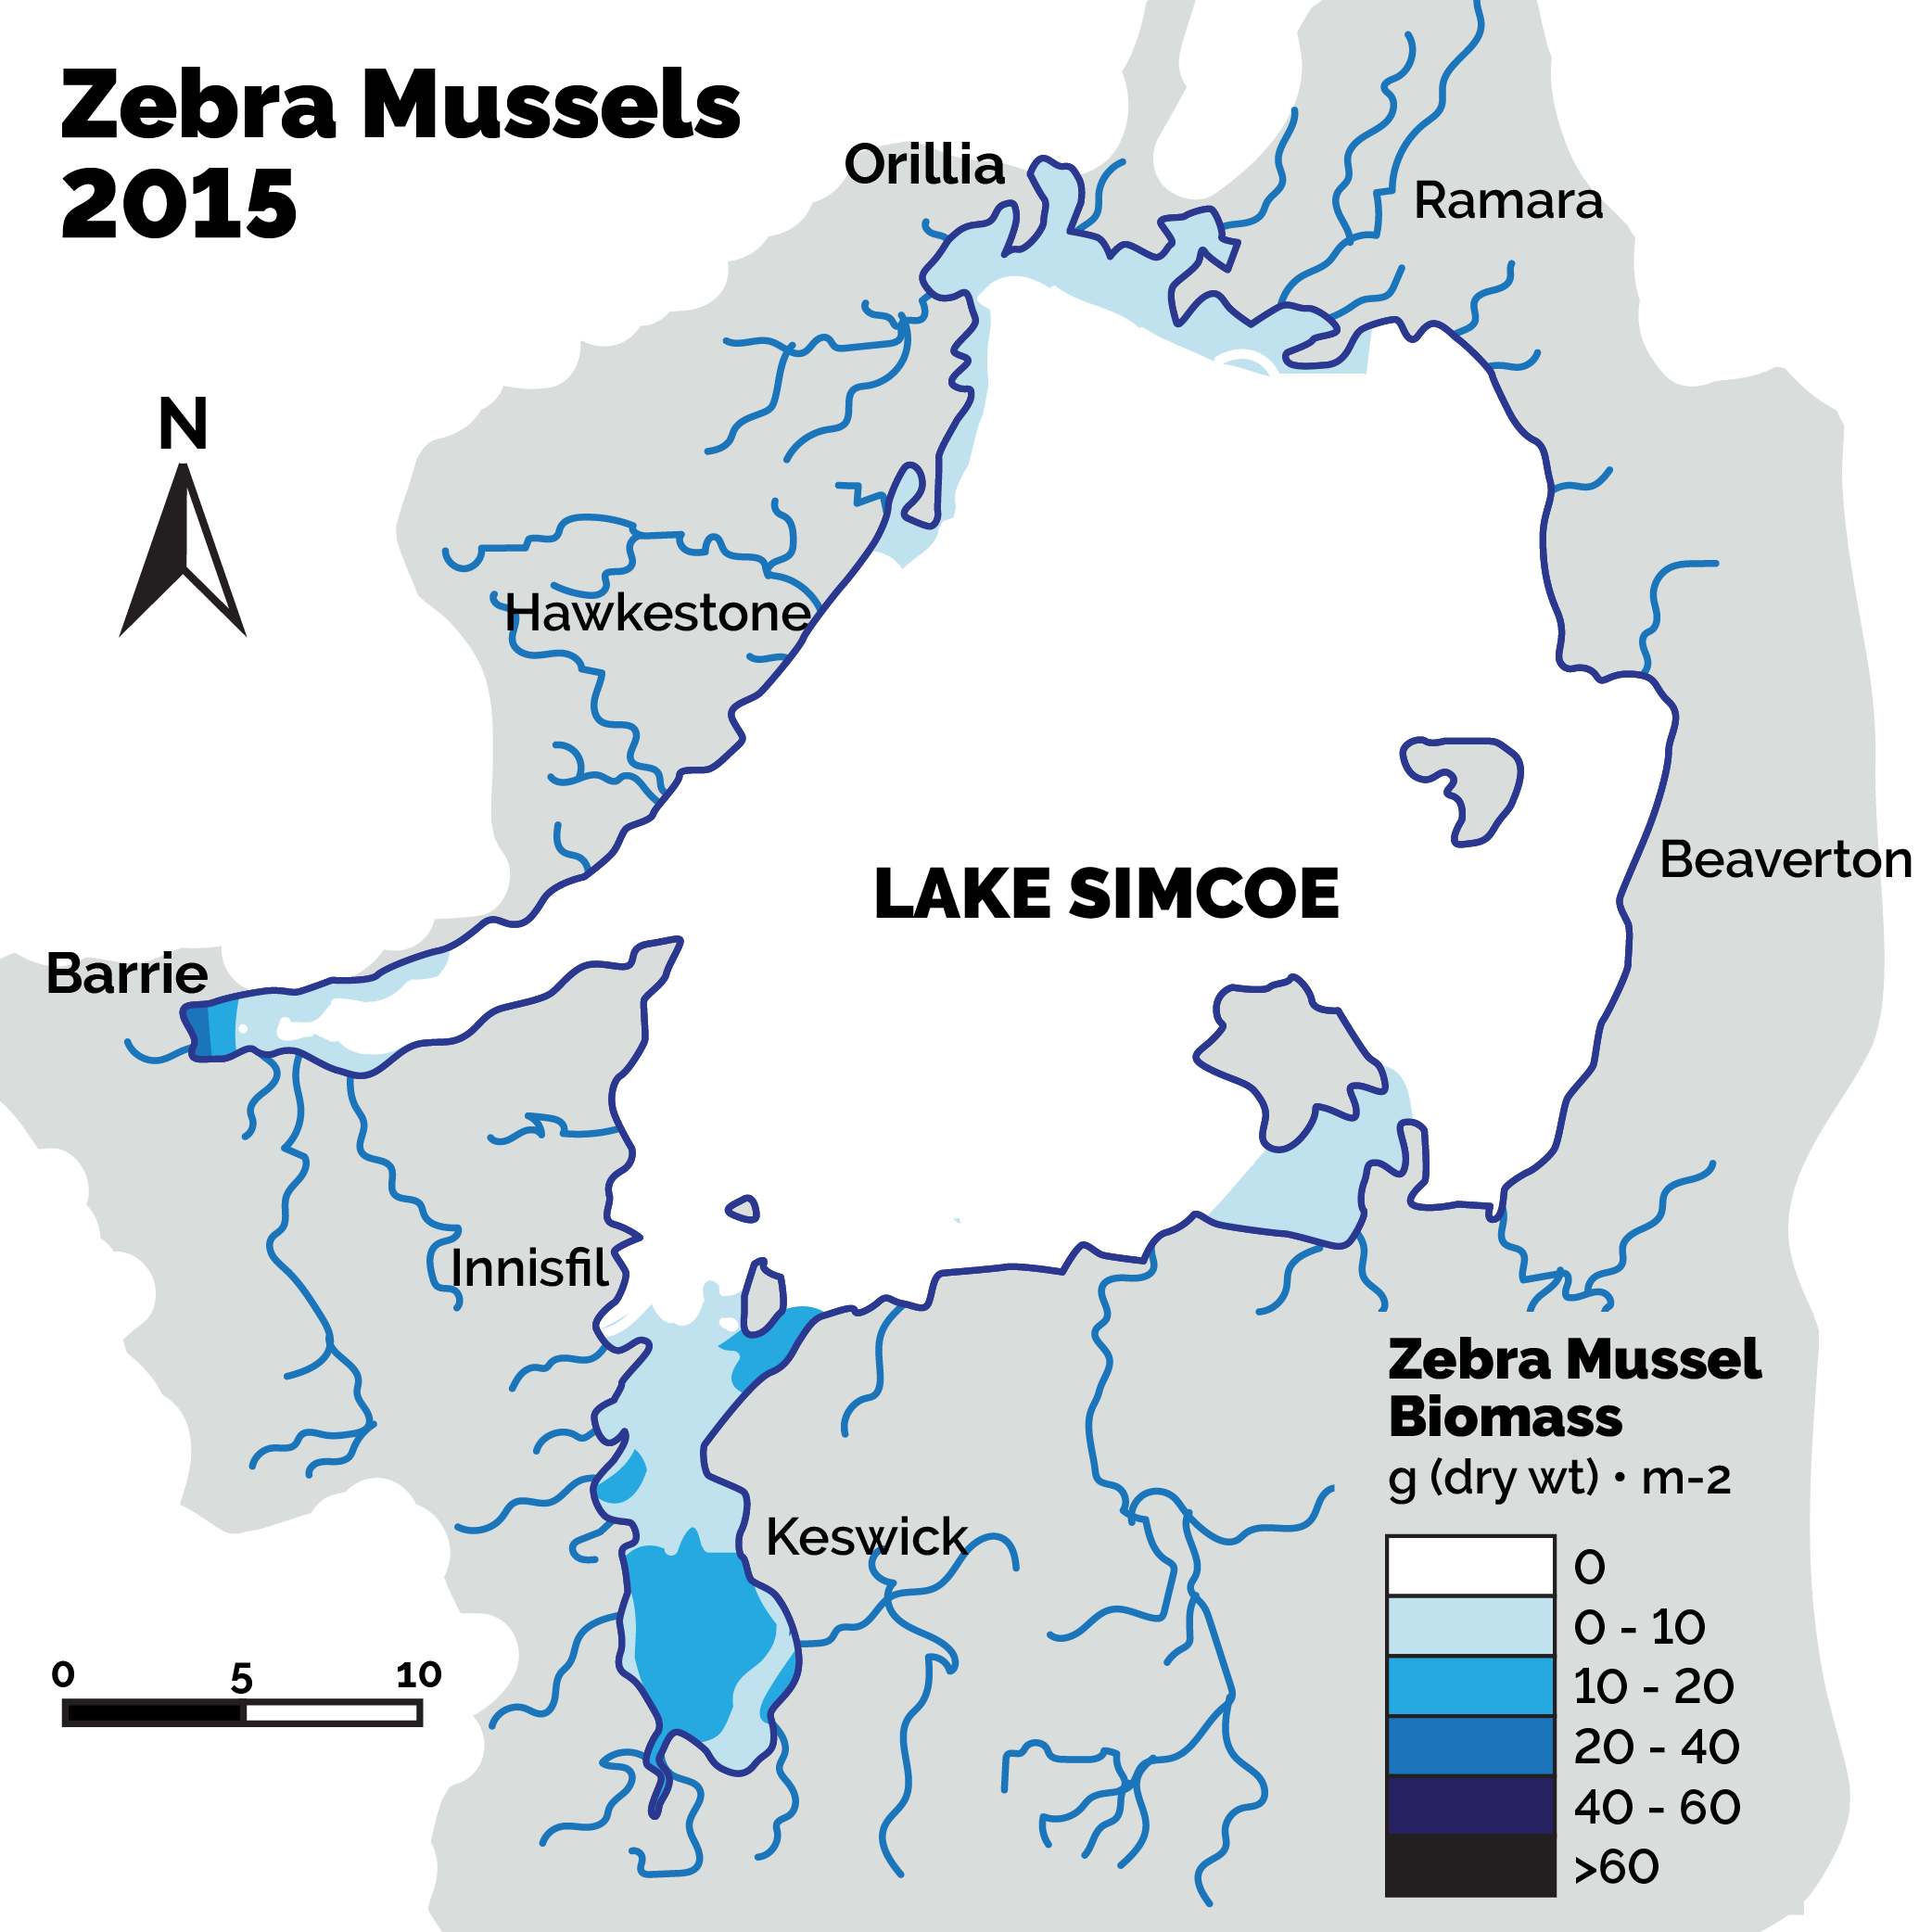 Zebra mussels in 2015